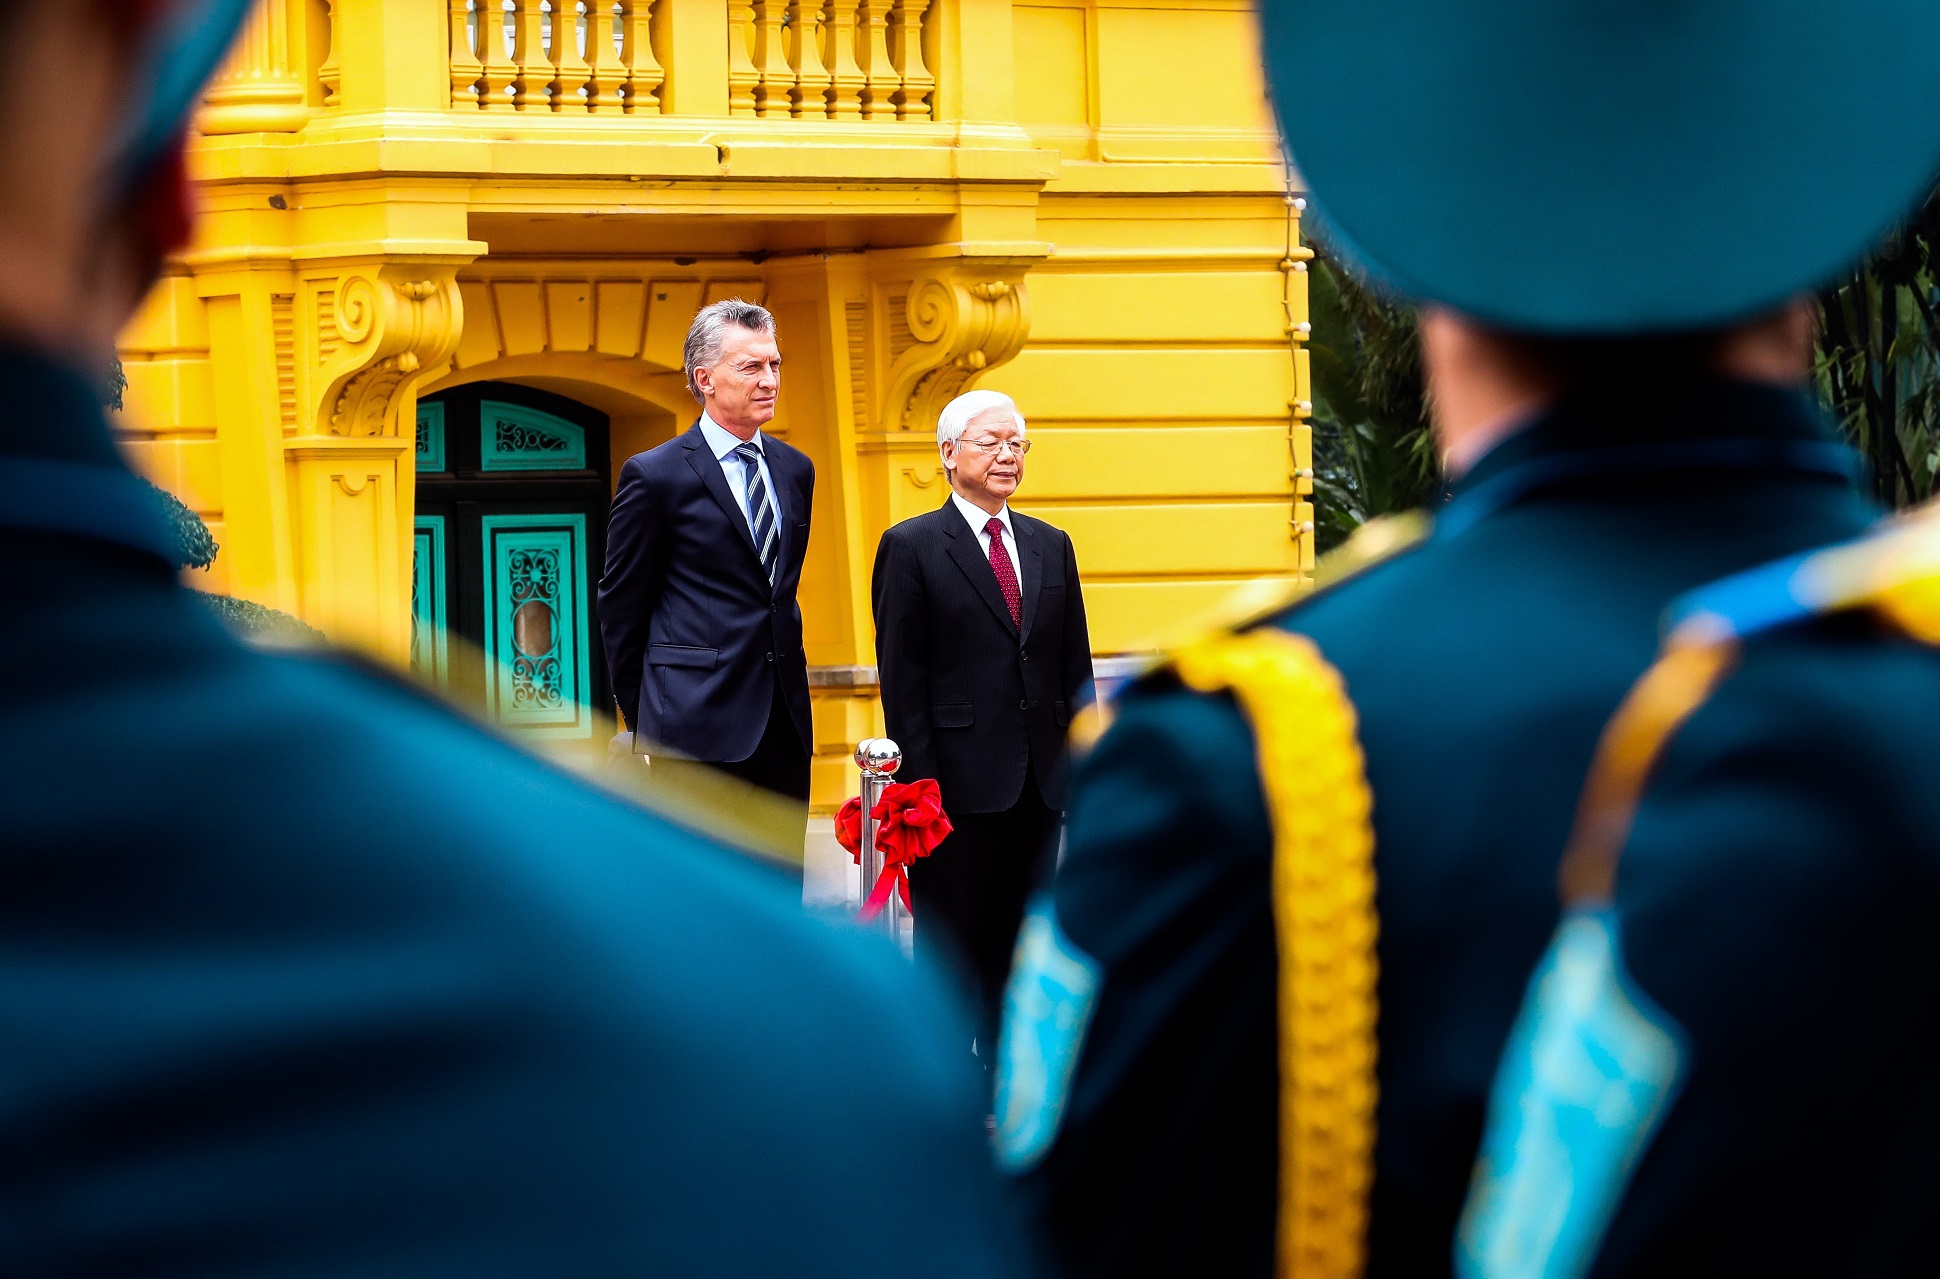 Macri: El trabajo conjunto entre la Argentina y Vietnam promoverá exportaciones y hará crecer la inversión extranjera